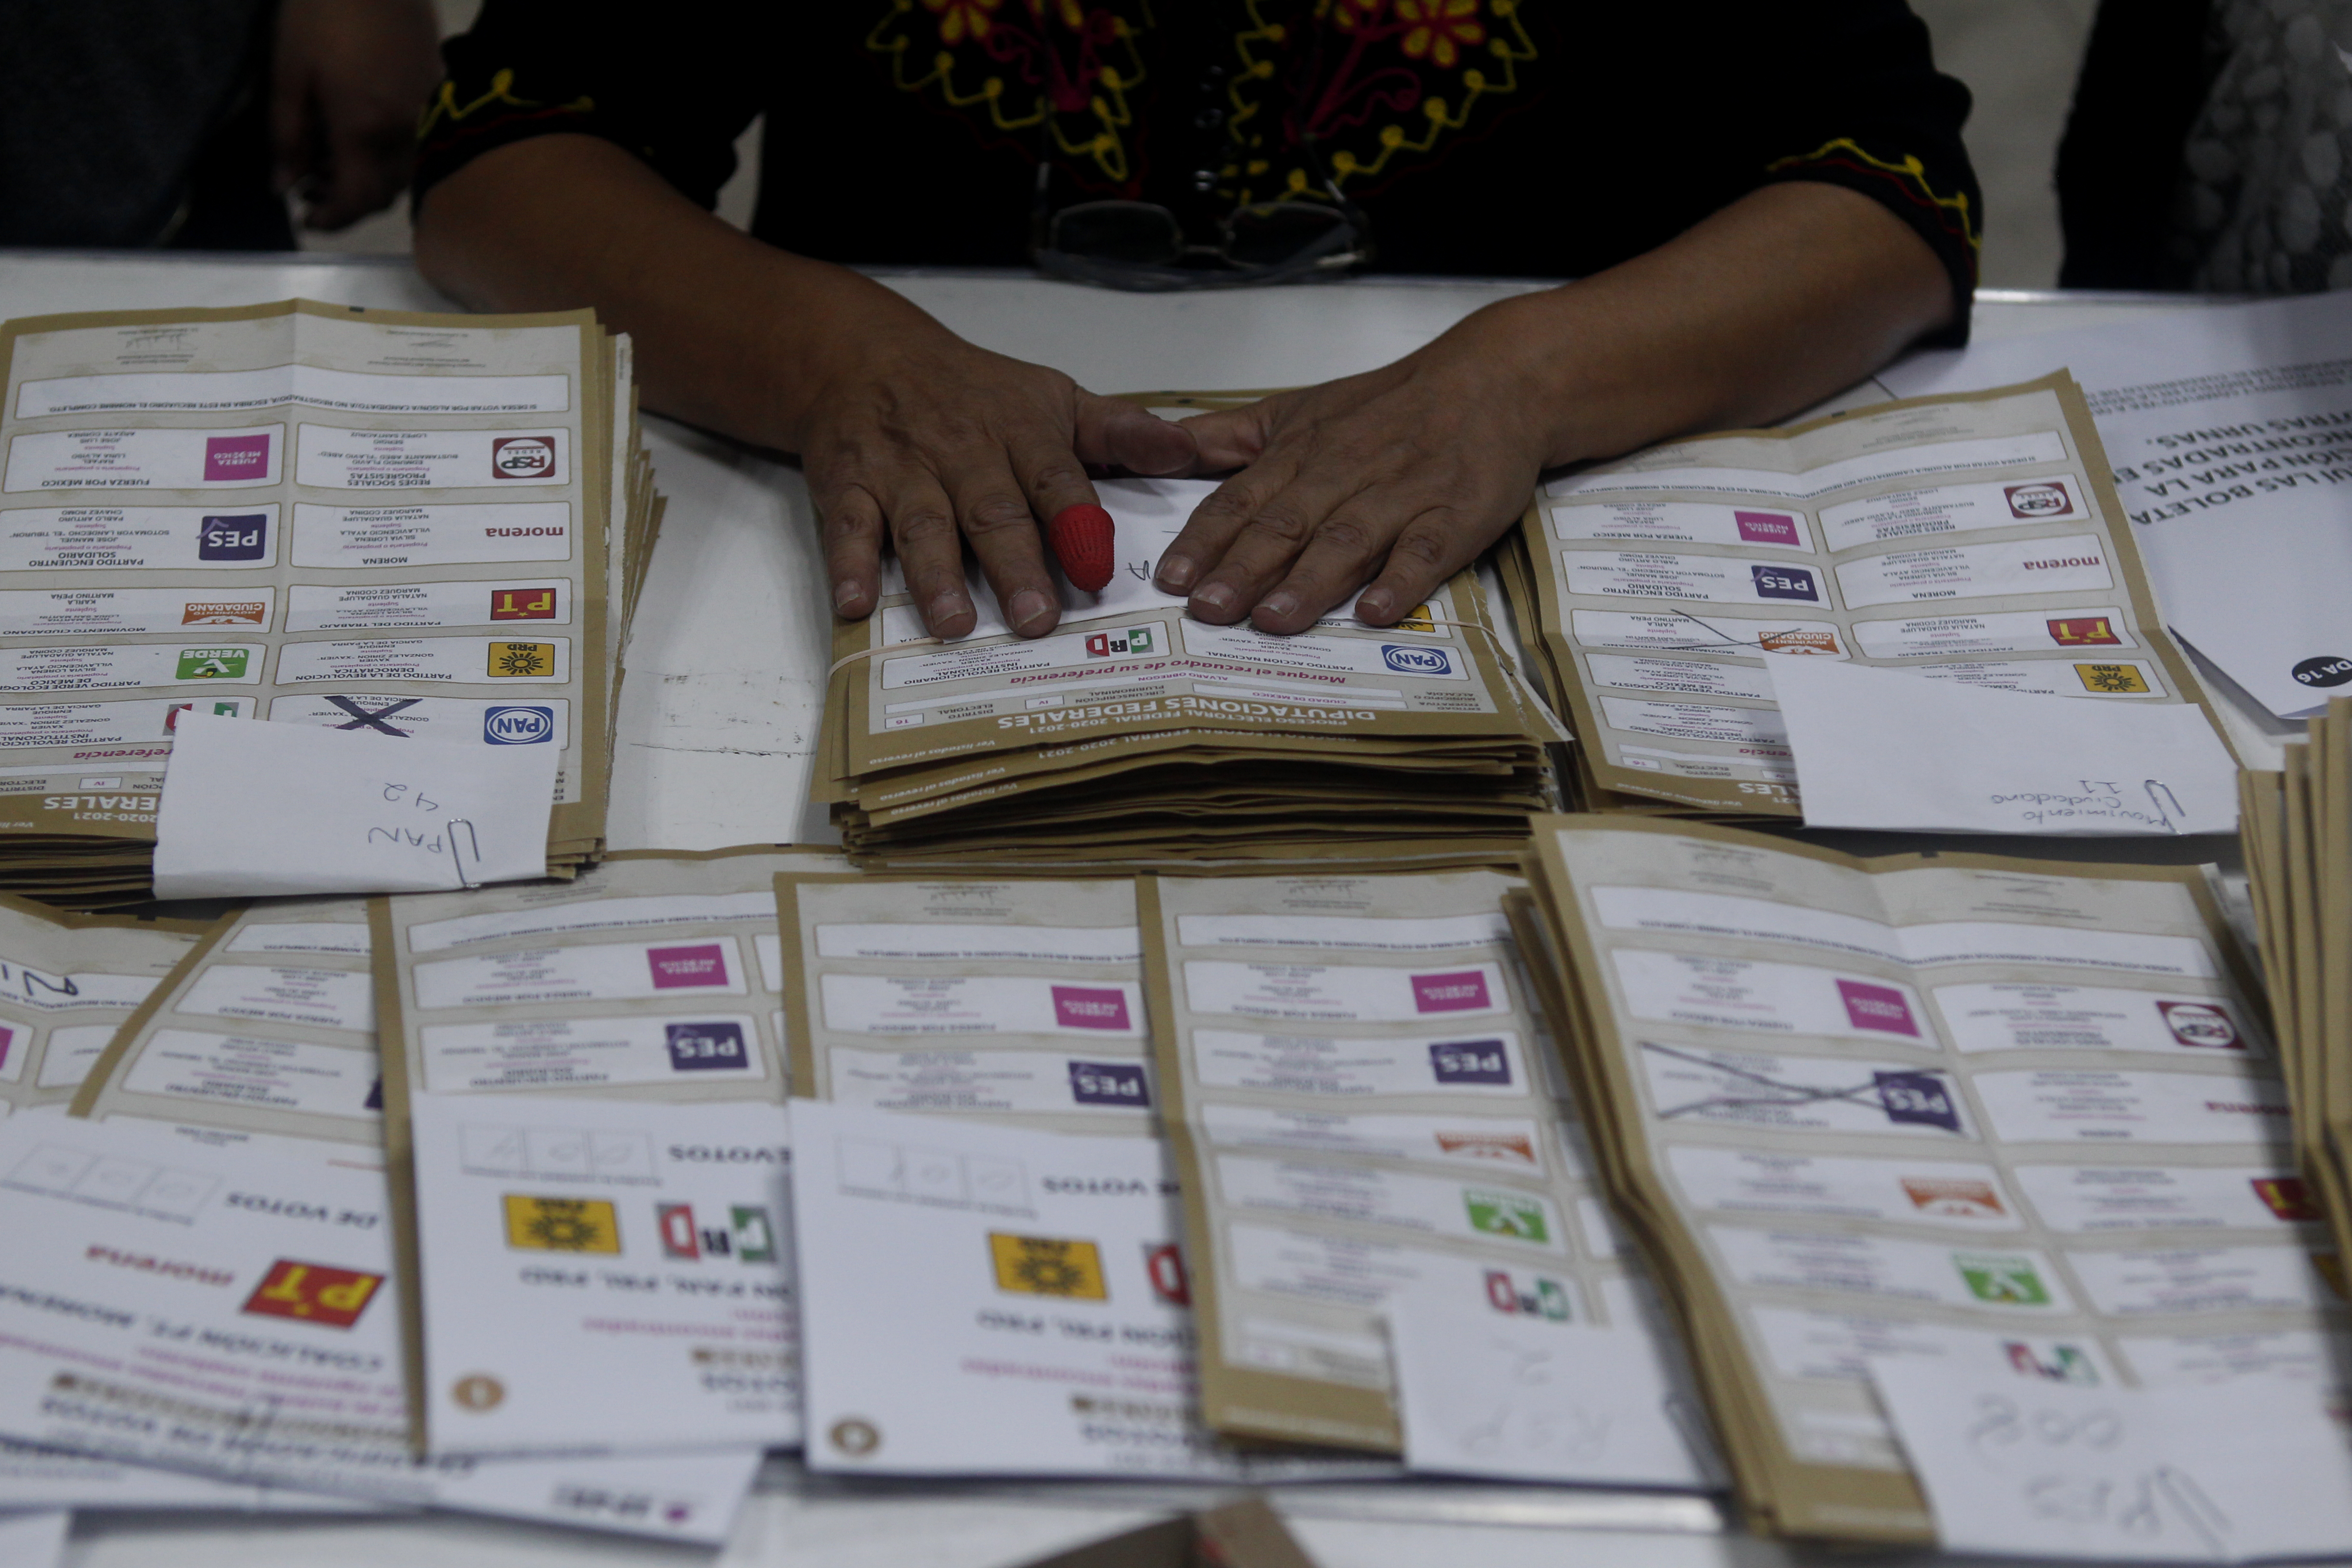 Finalización de la jornada electoral en alcaldía Álvaro Obregón. Ciudad de México, junio 6, 2021.Foto: Karina Hernández / Infobae